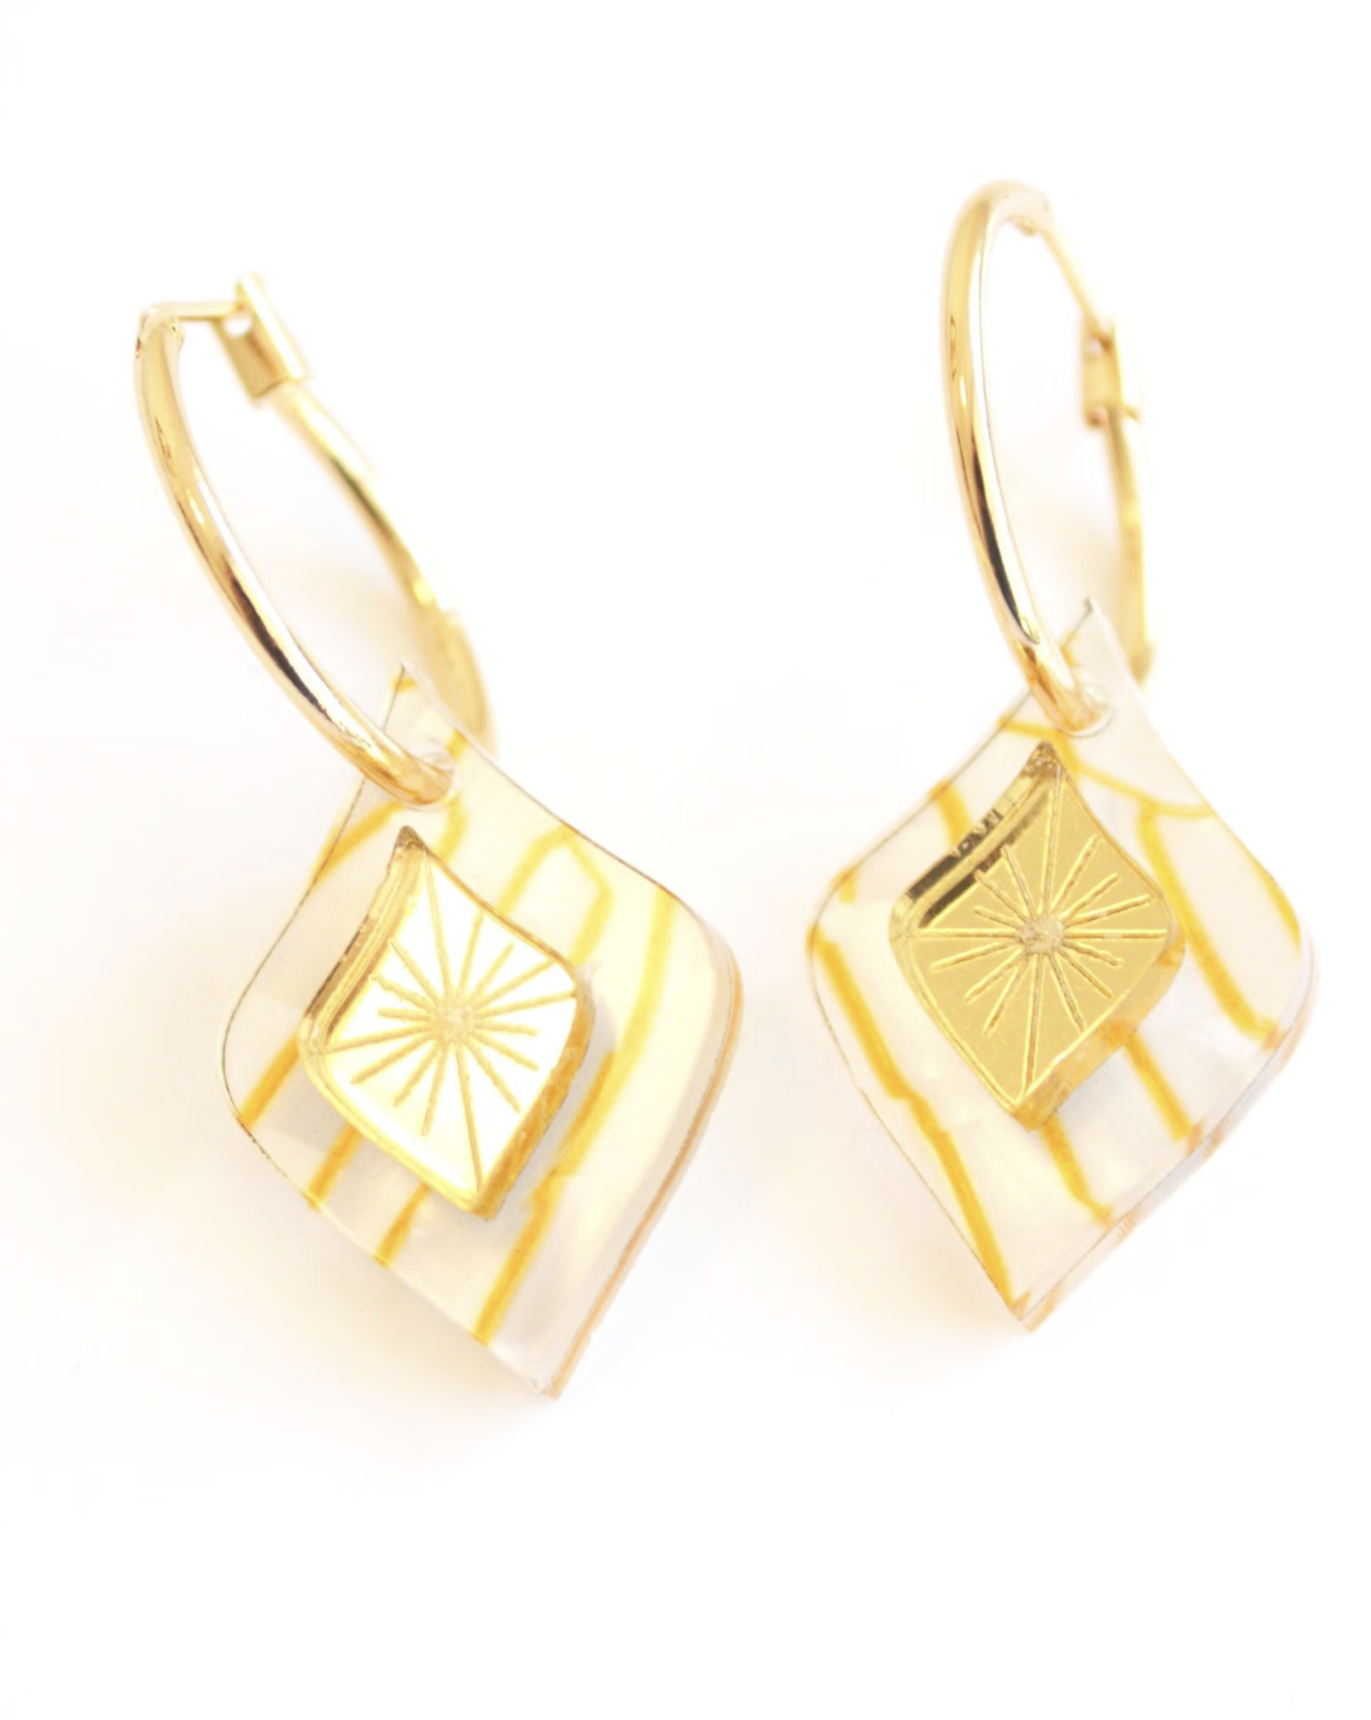 Hagen & Co Morocco Earrings - Pearl/Gold